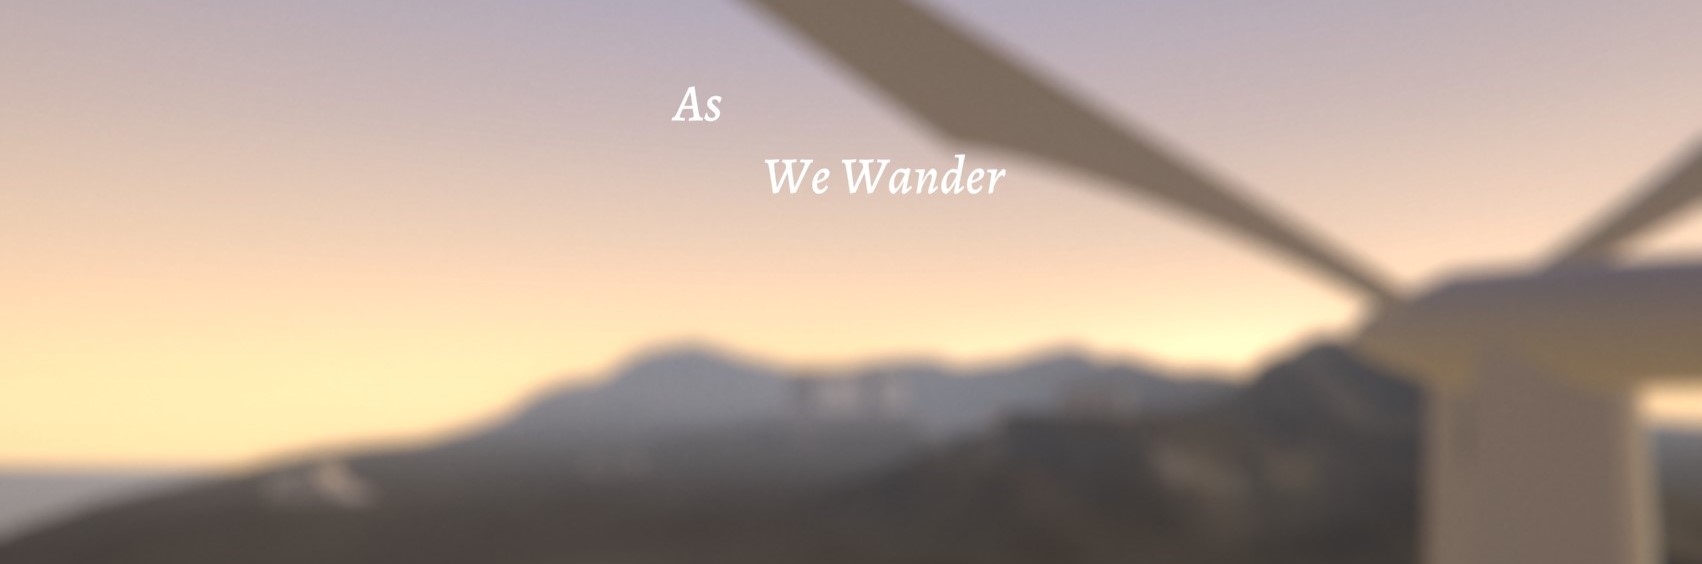 As We Wander